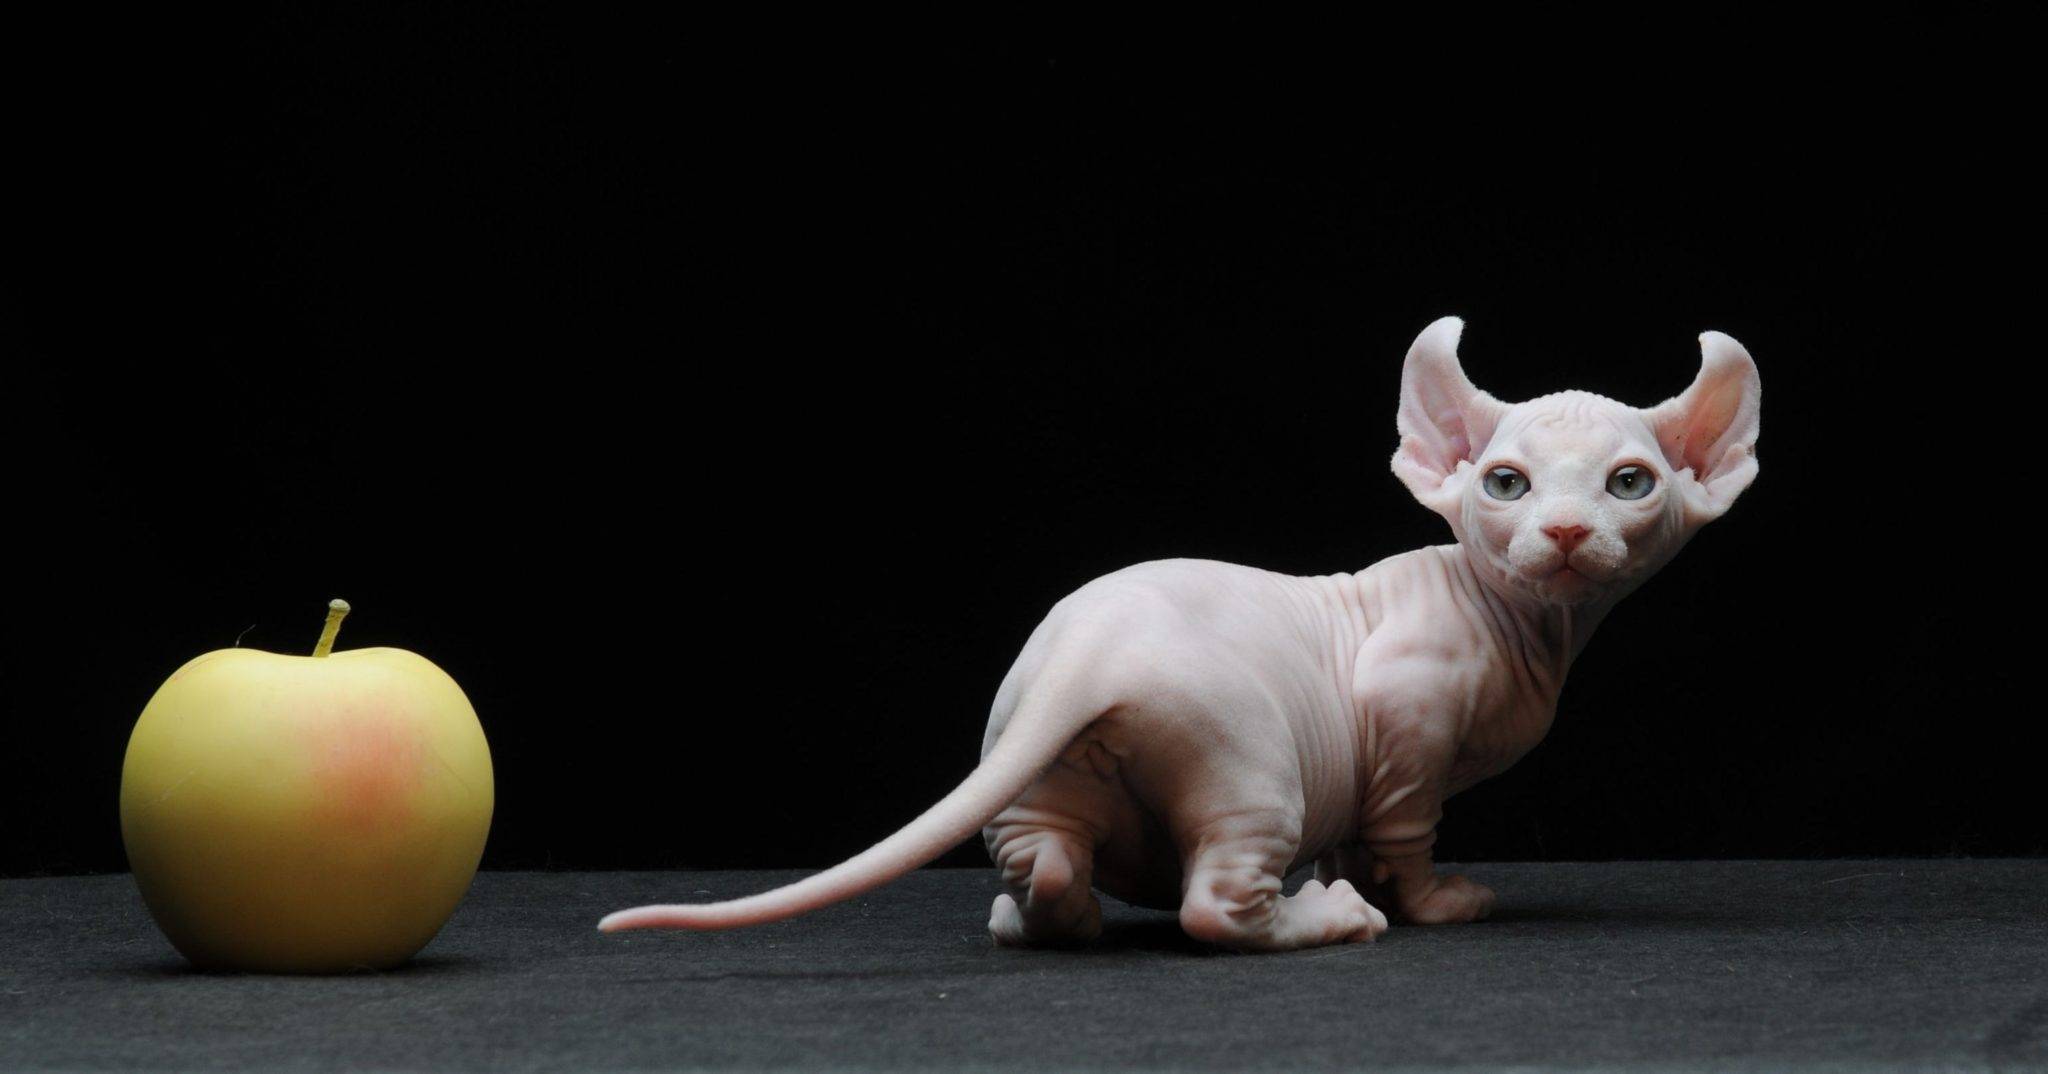 Самые маленькие кошки в мире: топ-10 домашних пород с фото и названиями